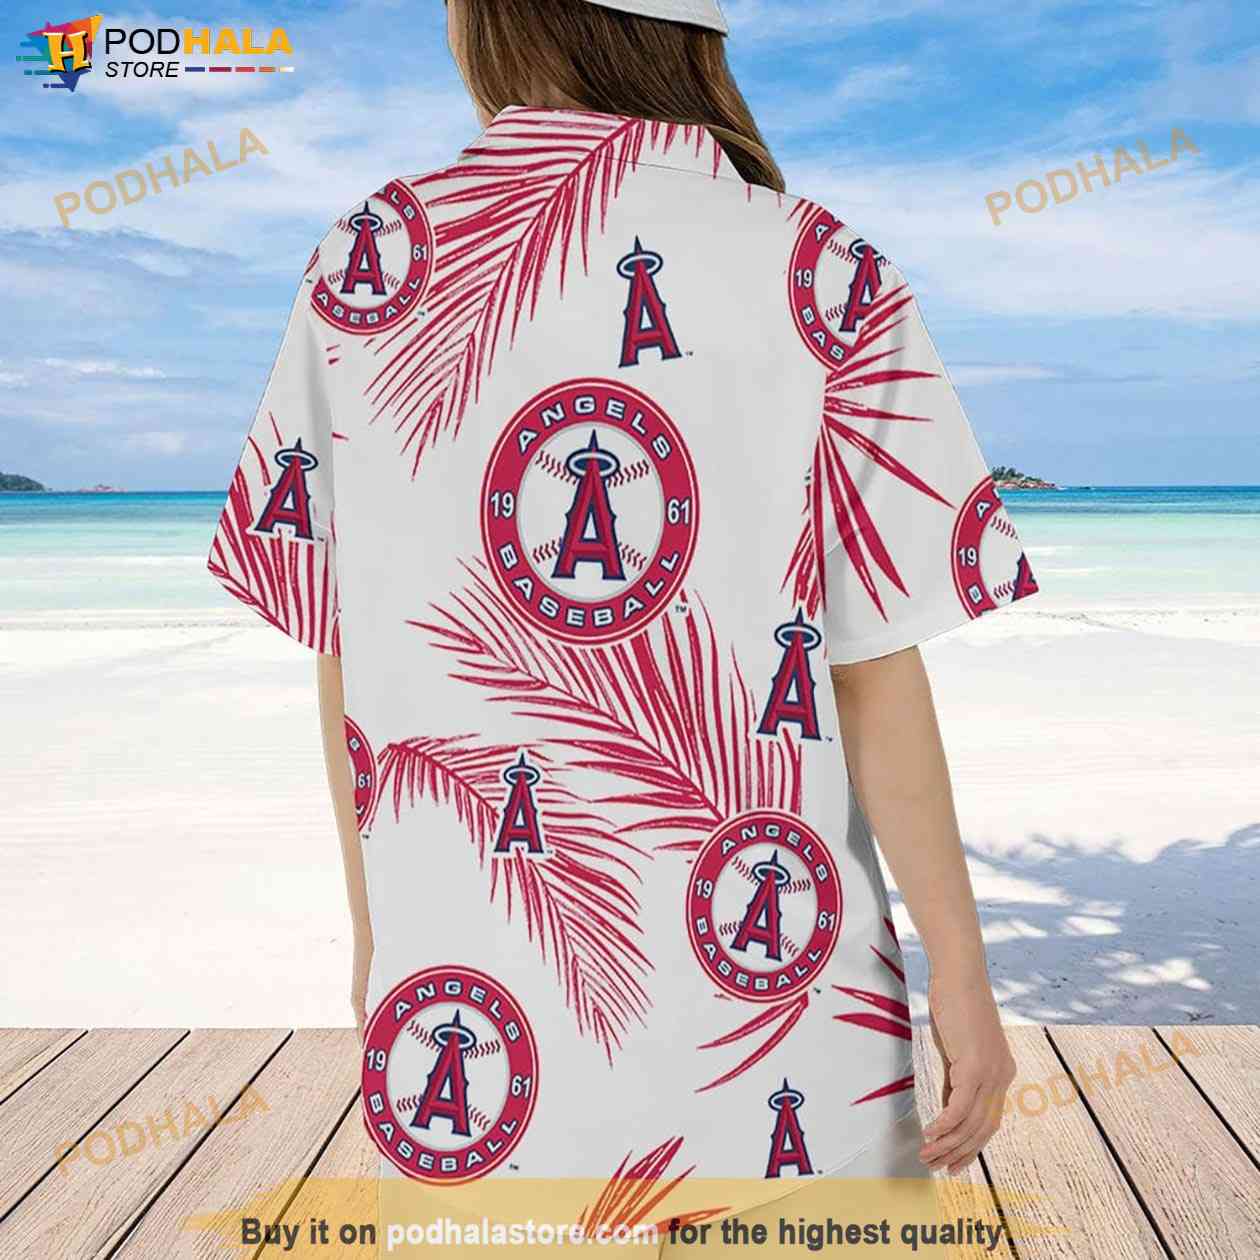 Chicago White Sox Baseball Coconut Beach Pattern Hawaiian Shirt And Shorts  Summer Vacation Gift